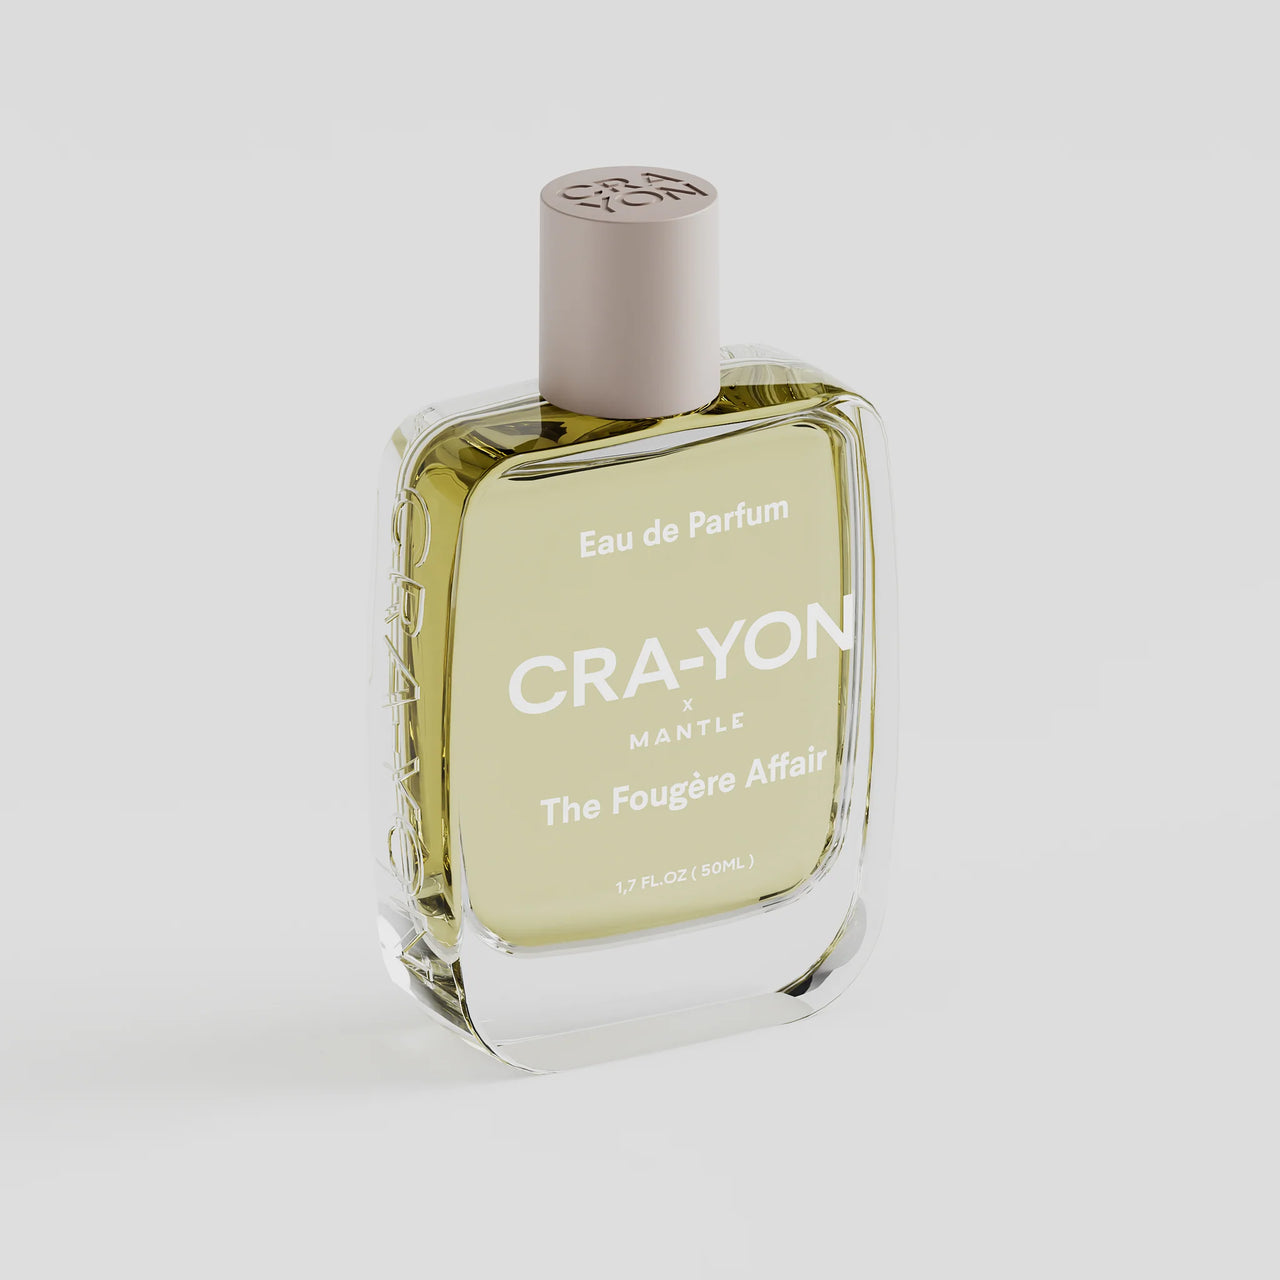 CRA-YON The Fougère Affair Eau De Parfum